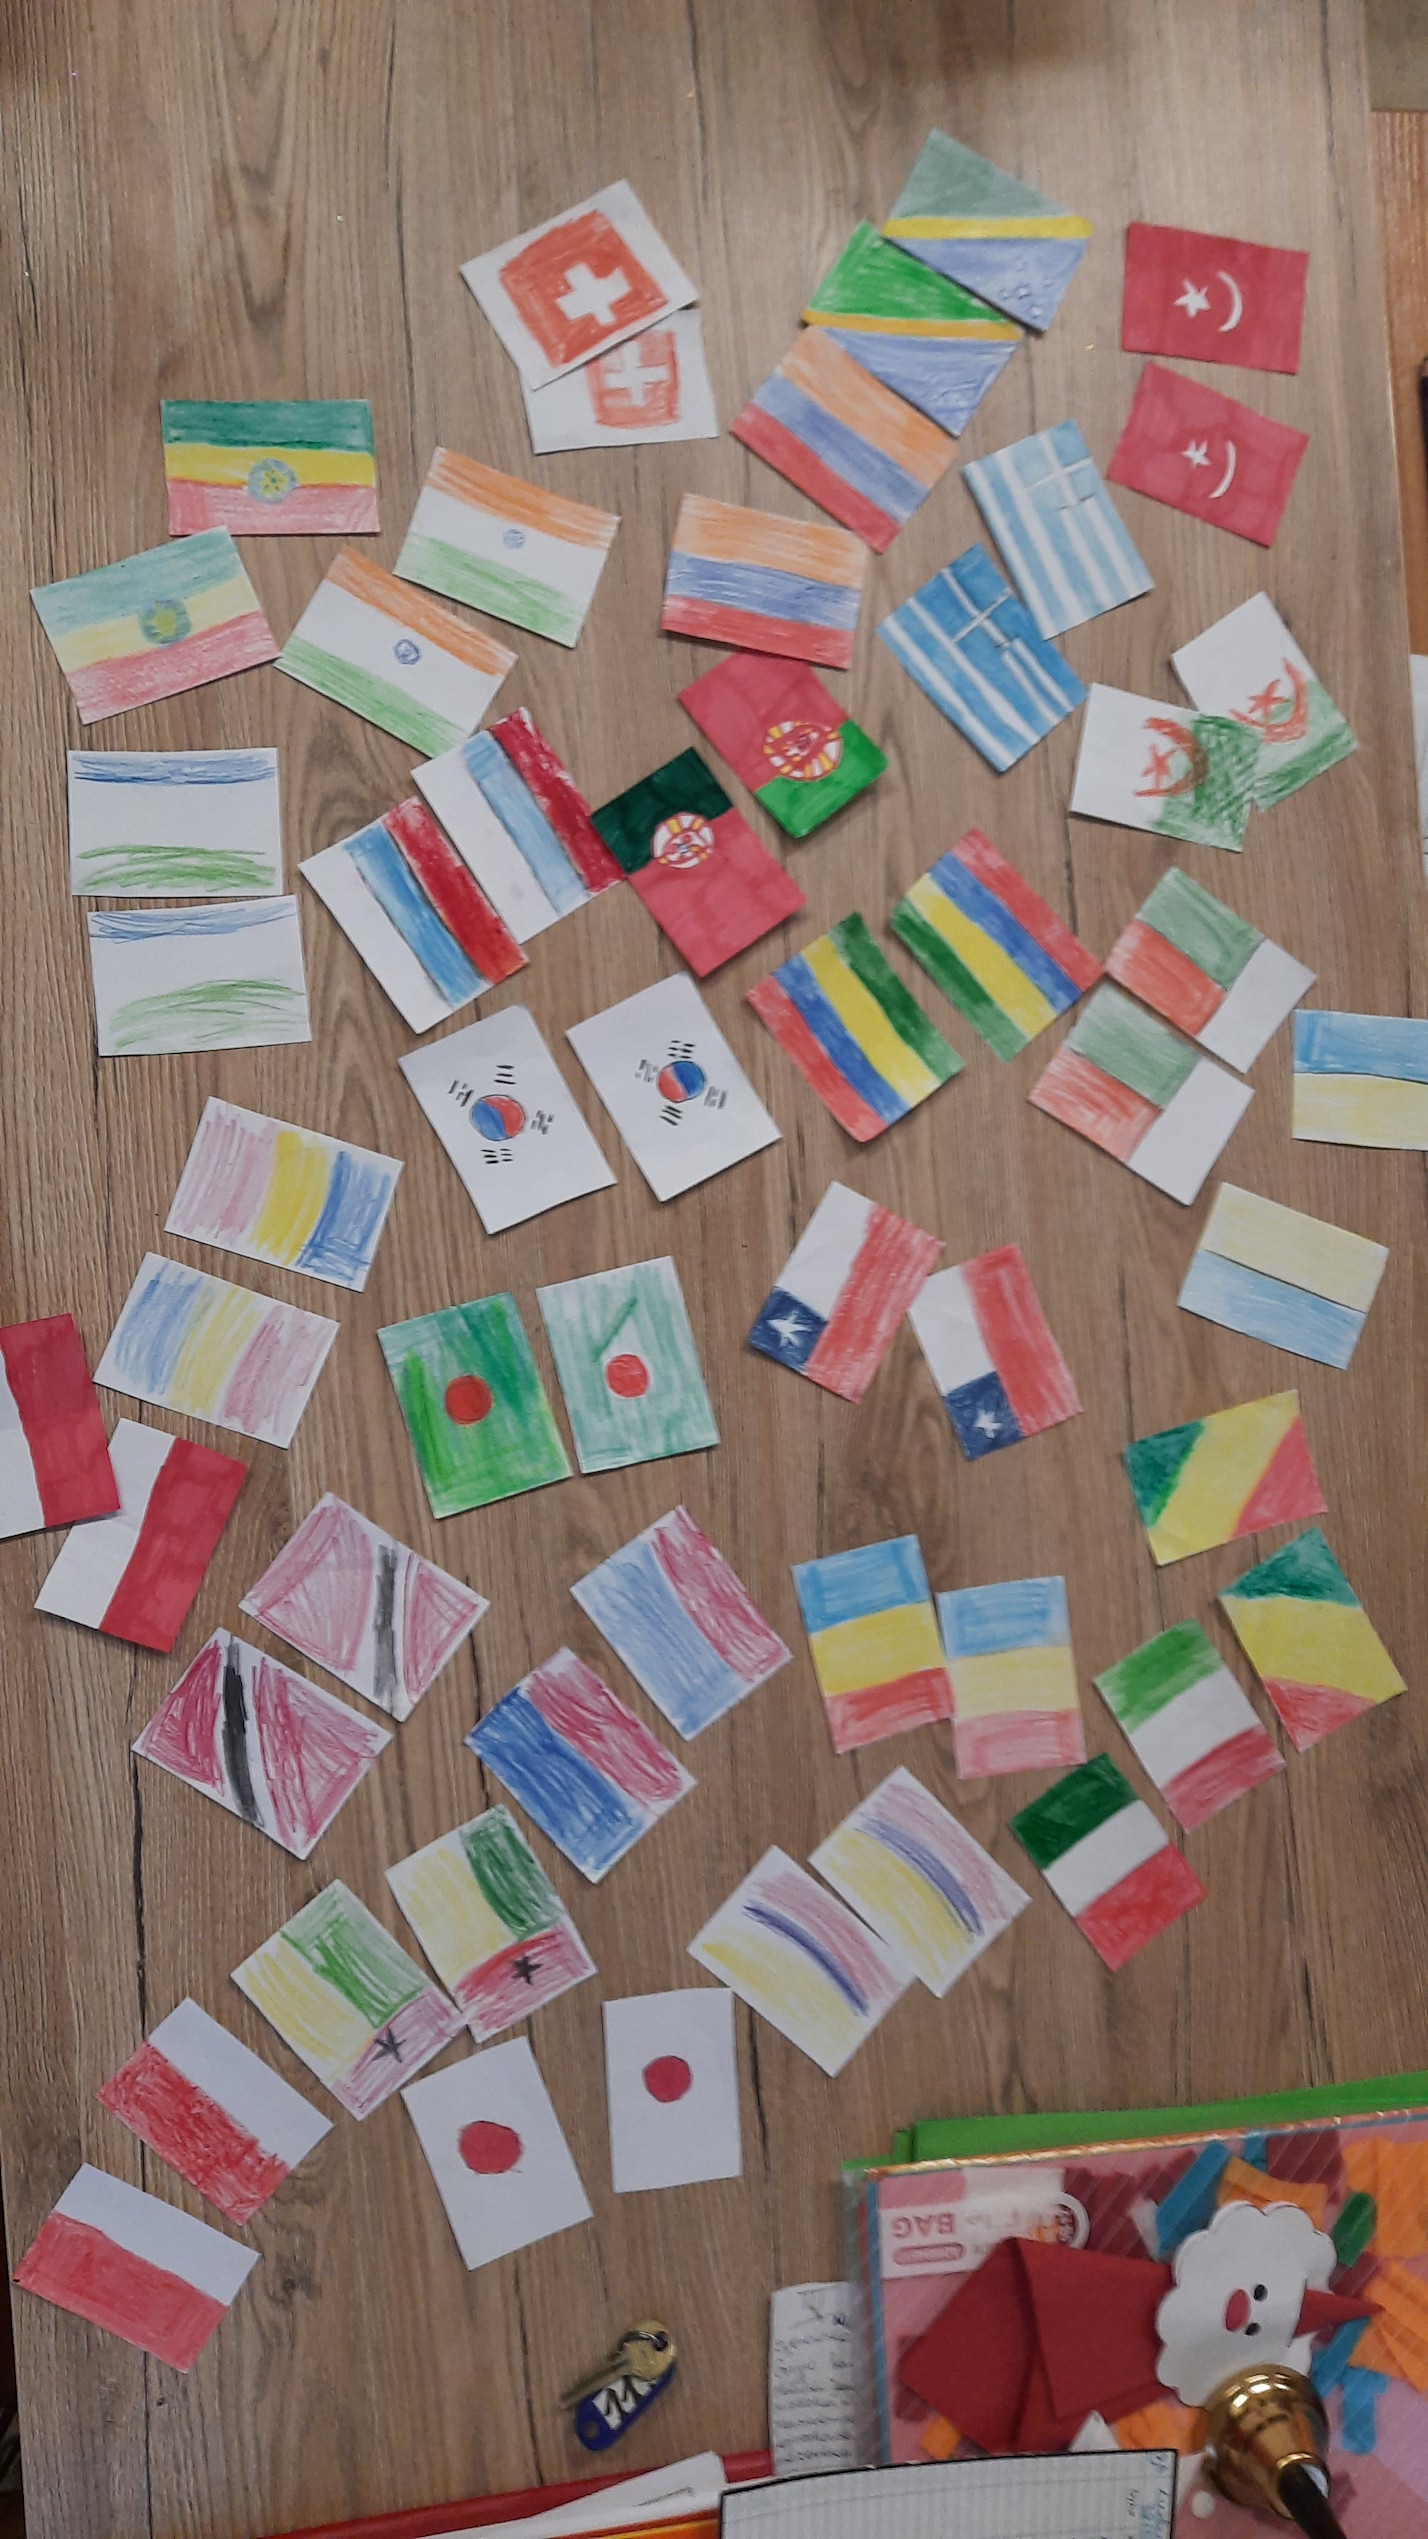 Na stole rozłożono rysunki flag różnych państw przygotowane przez dzieci.